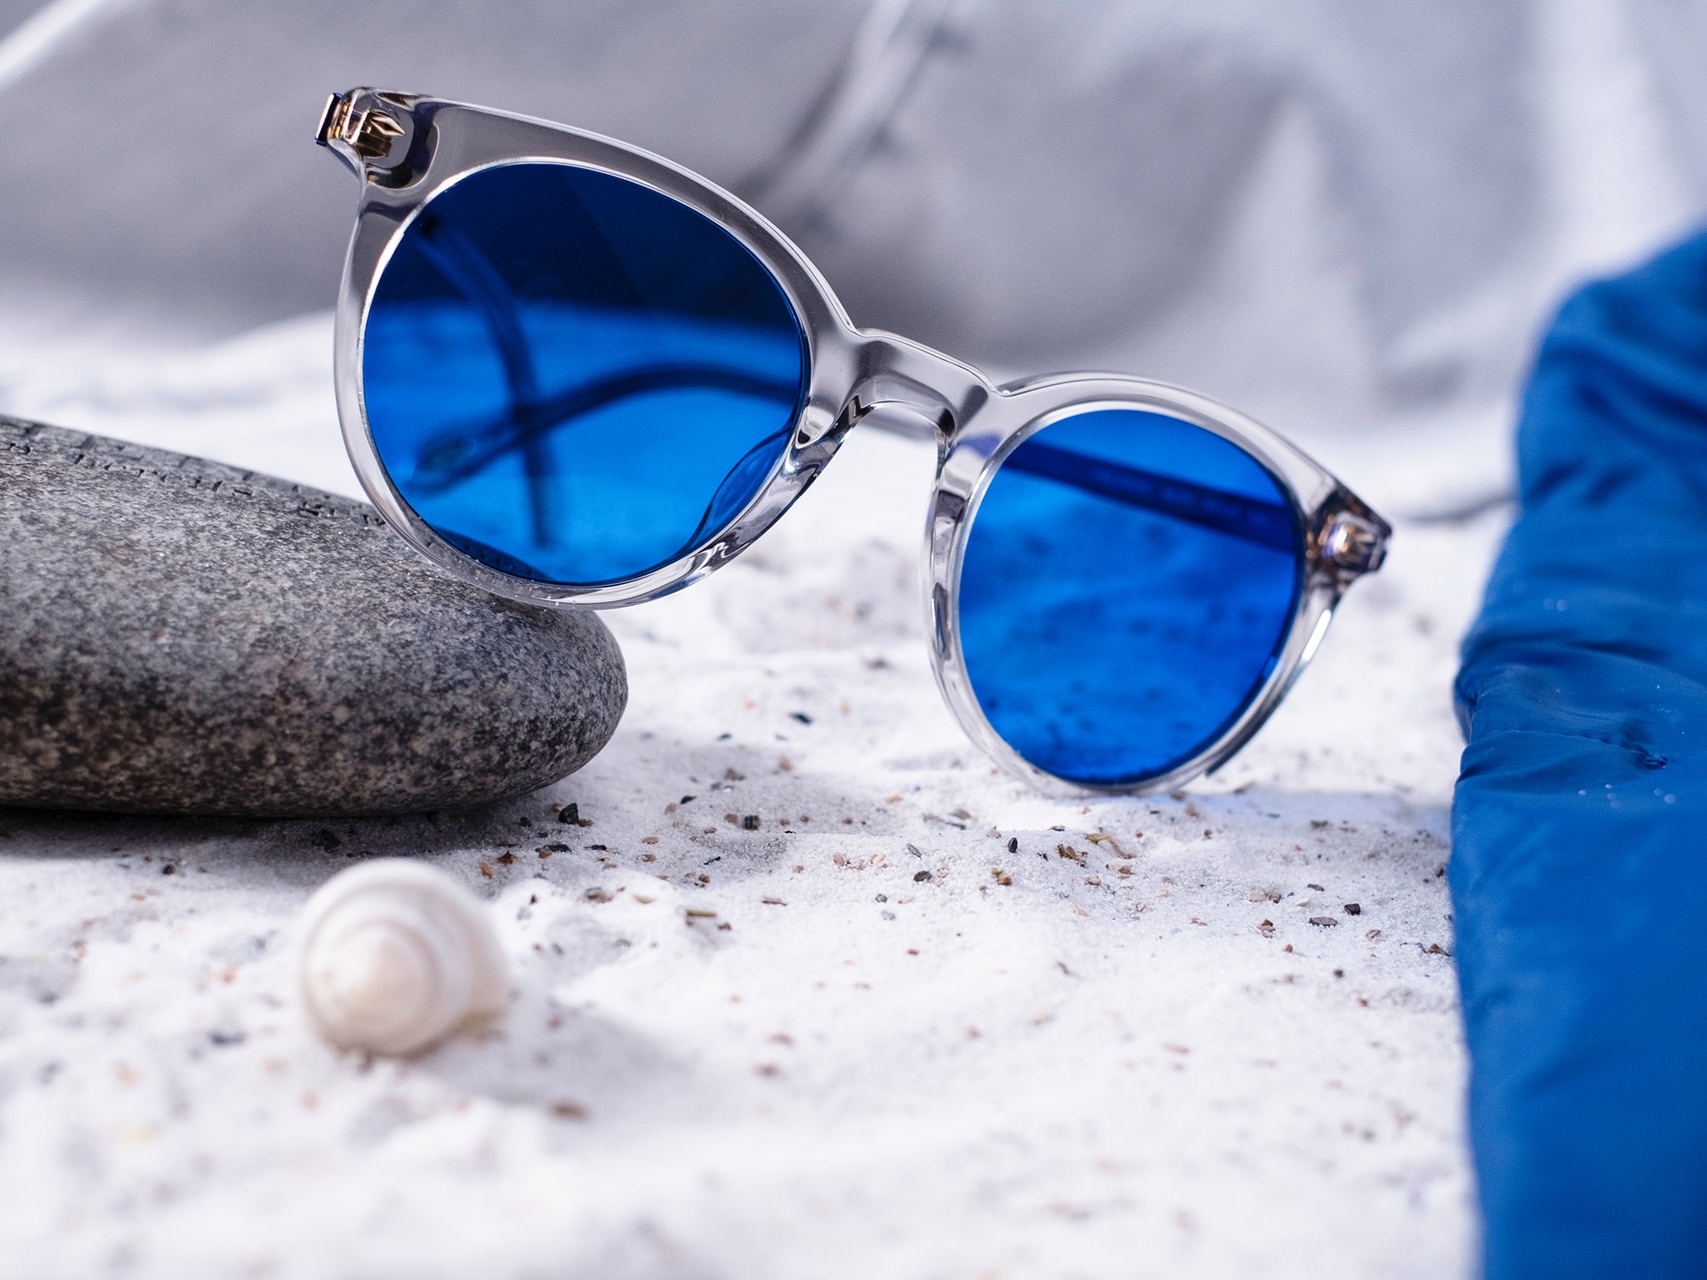 Obrázok slnečných okuliarov s modrým odtieňom napoly položených na kameni